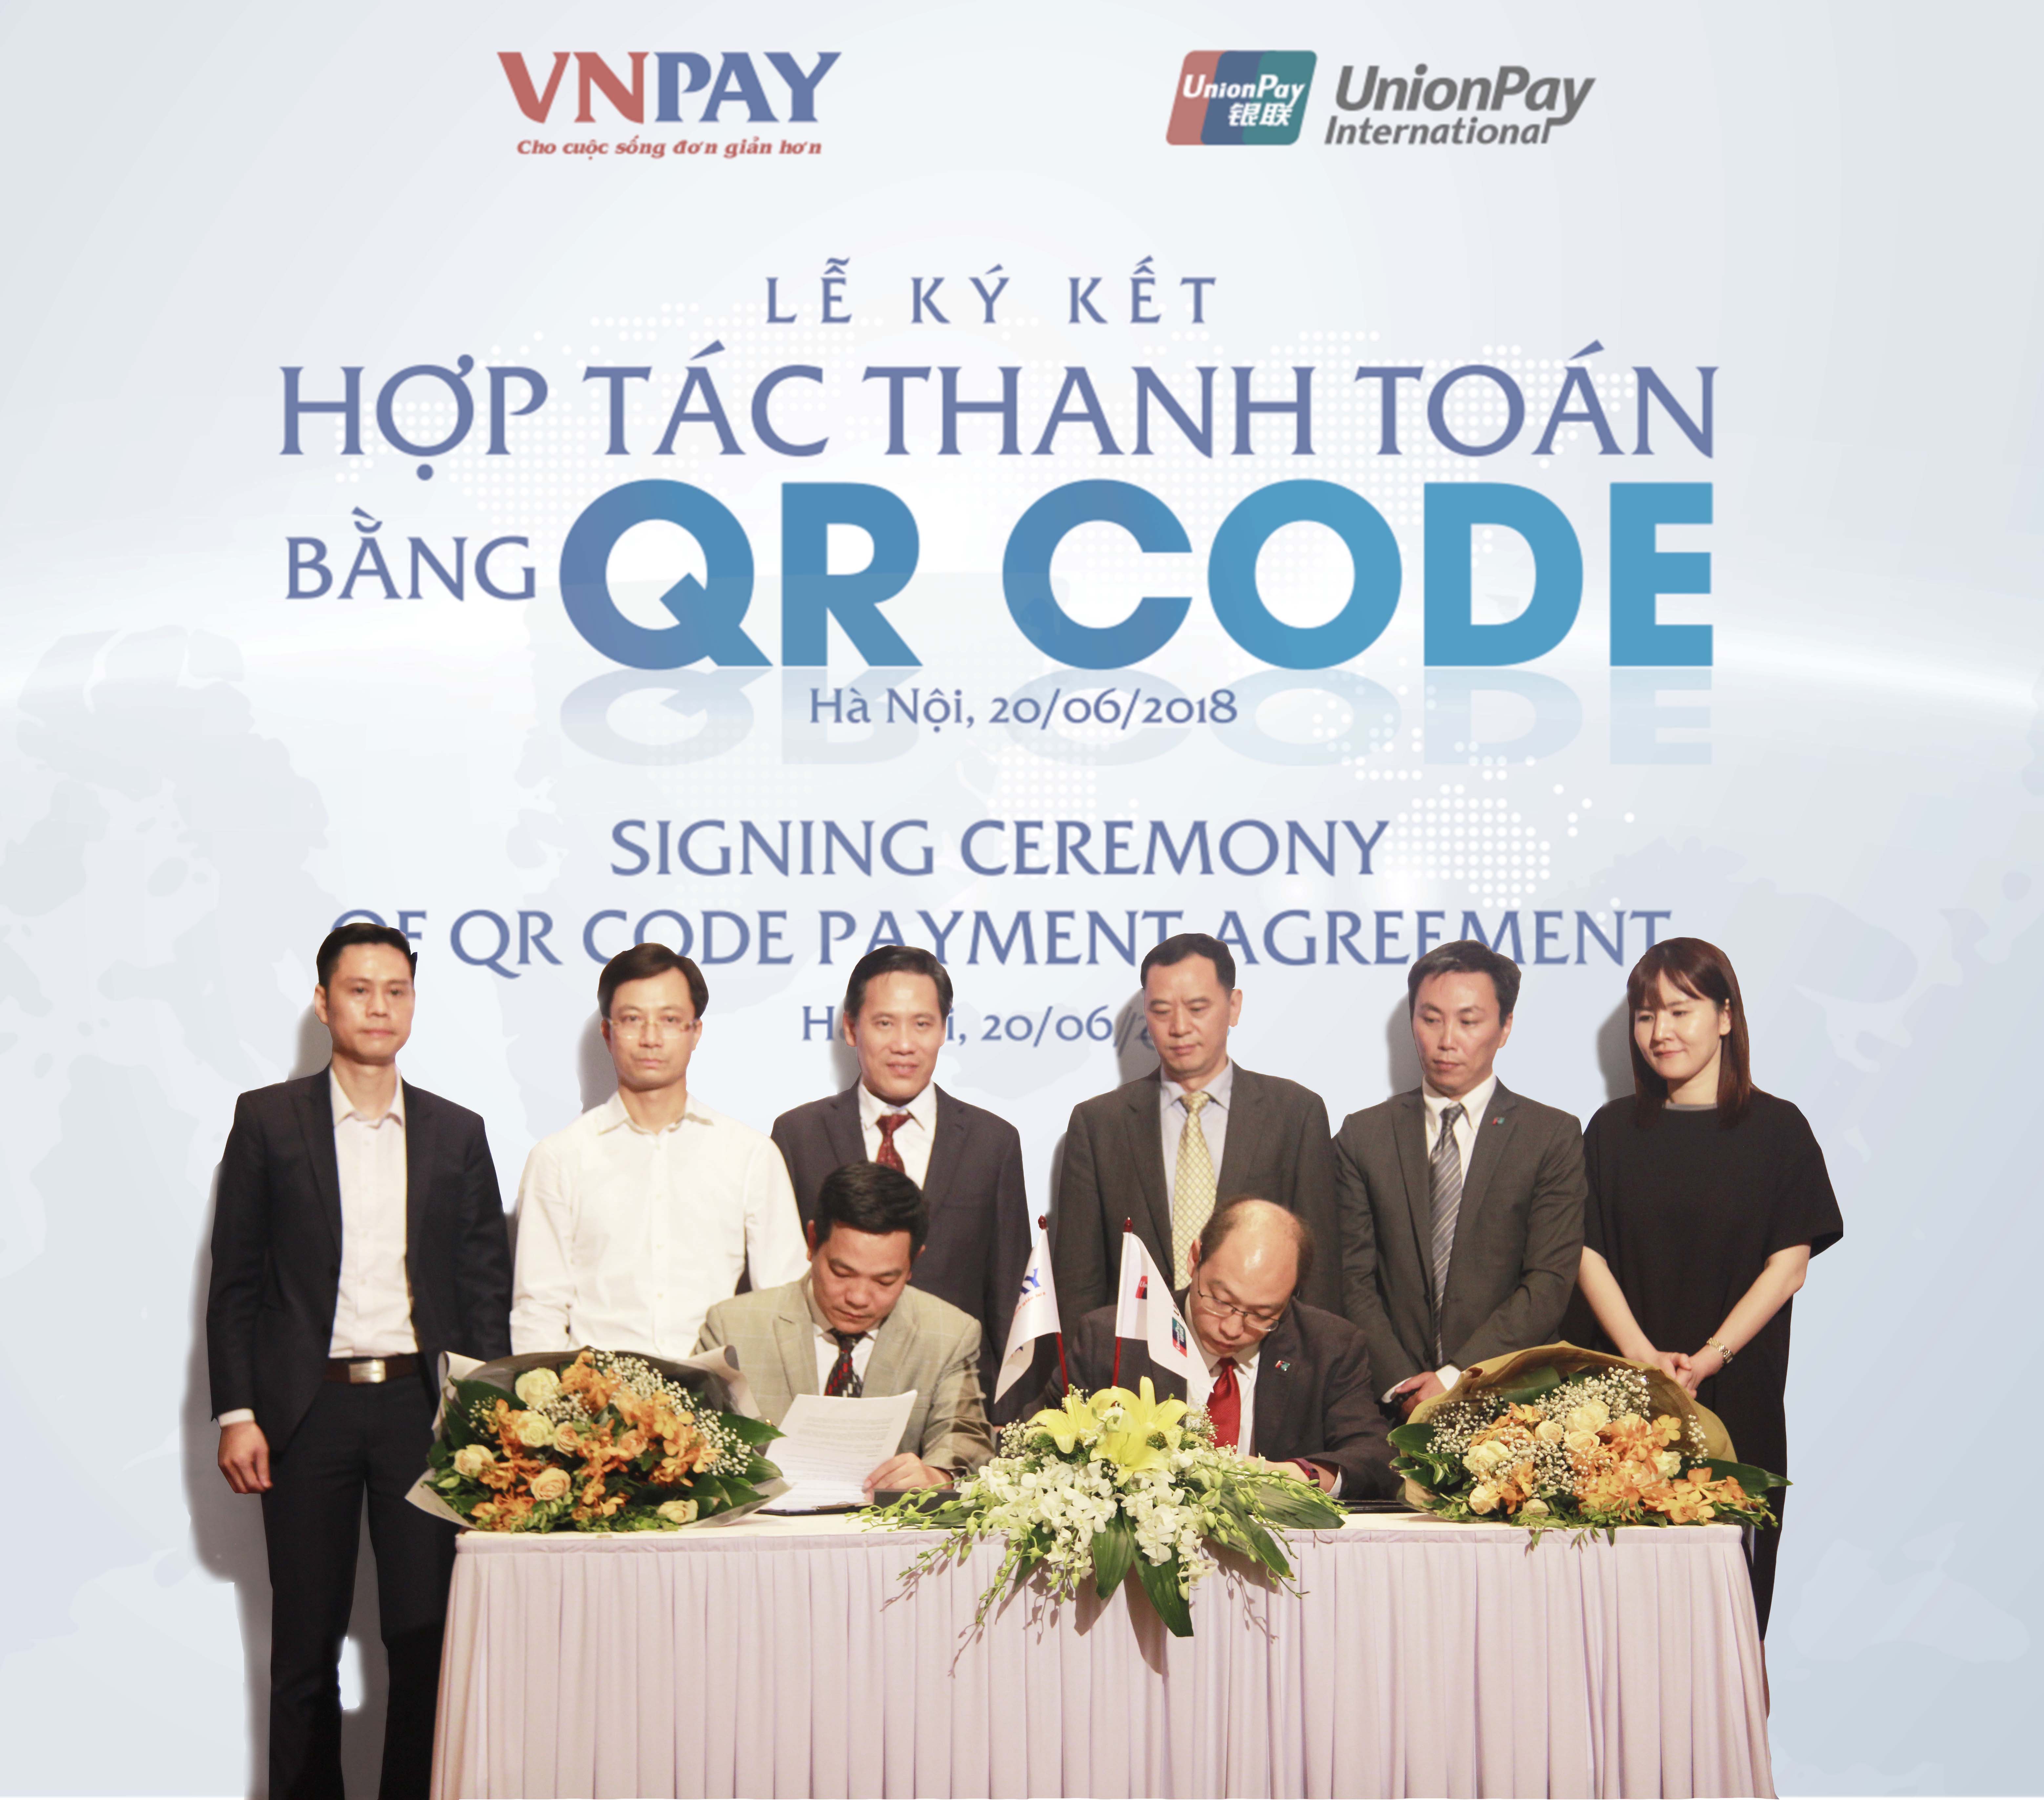 VNPAY ký kết hợp tác với UnionPay về phát triển thanh toán bằng QR CODE